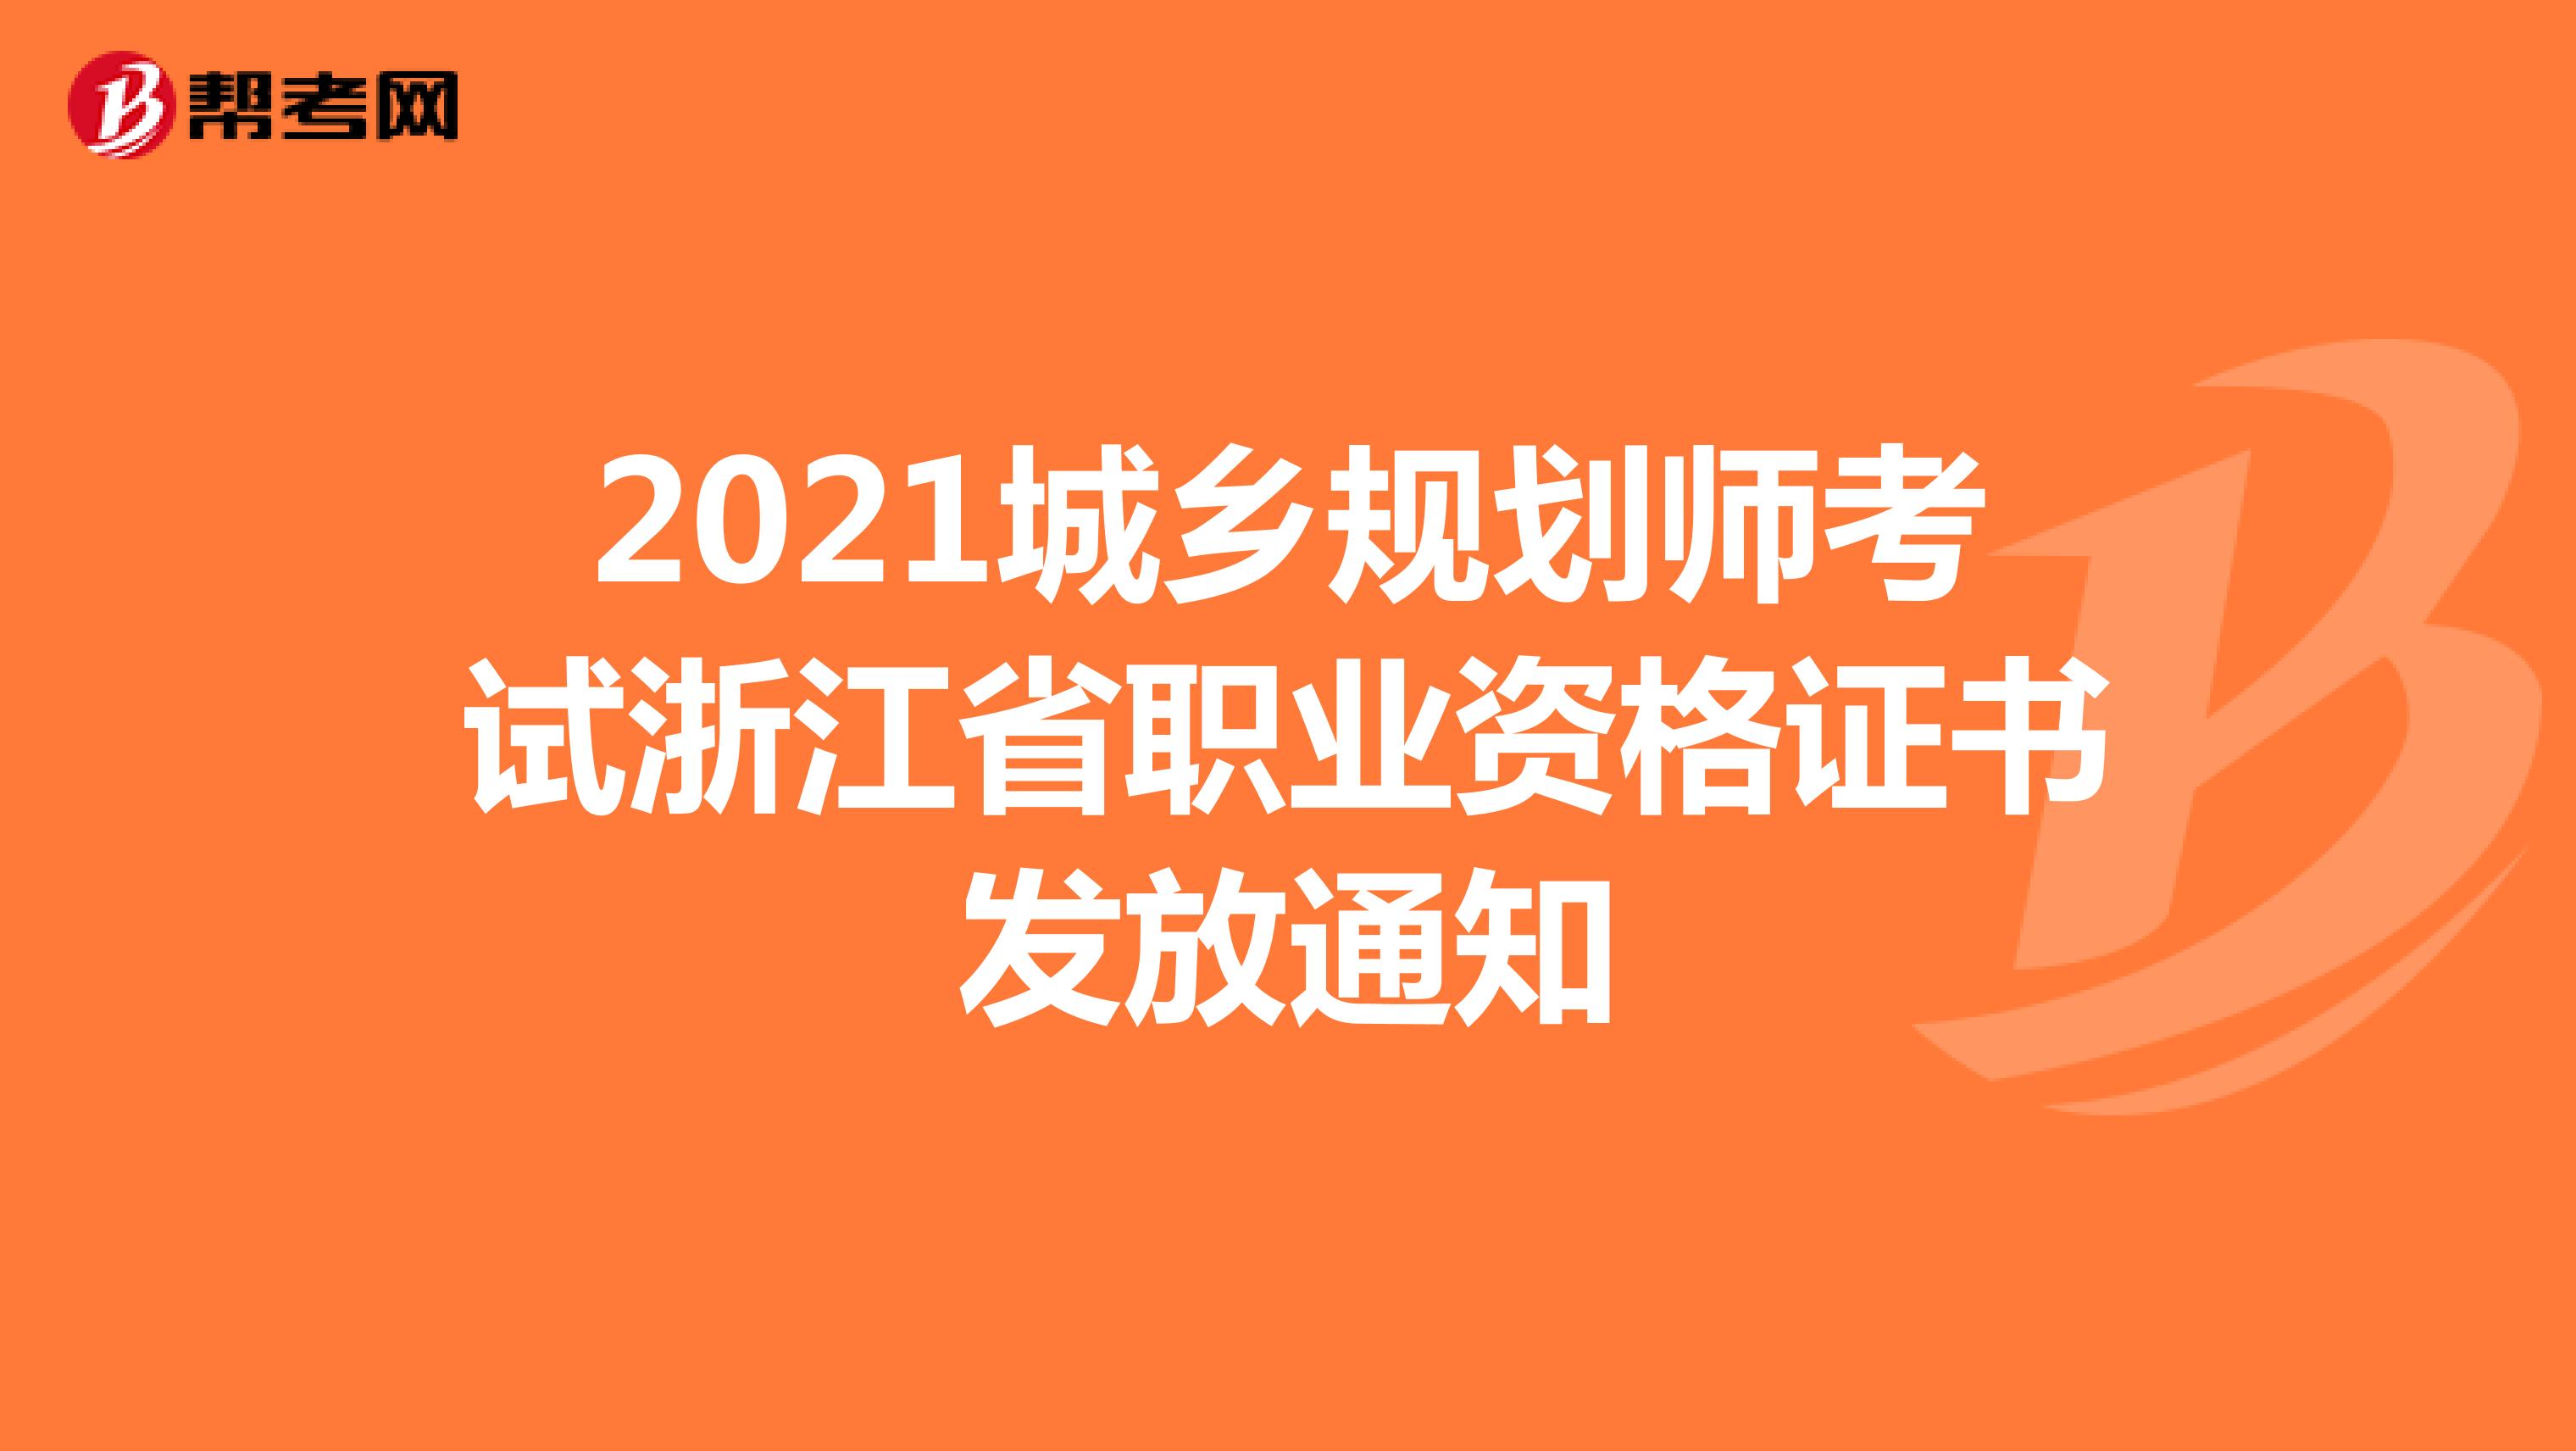 2021城乡规划师考试浙江省职业资格证书发放通知